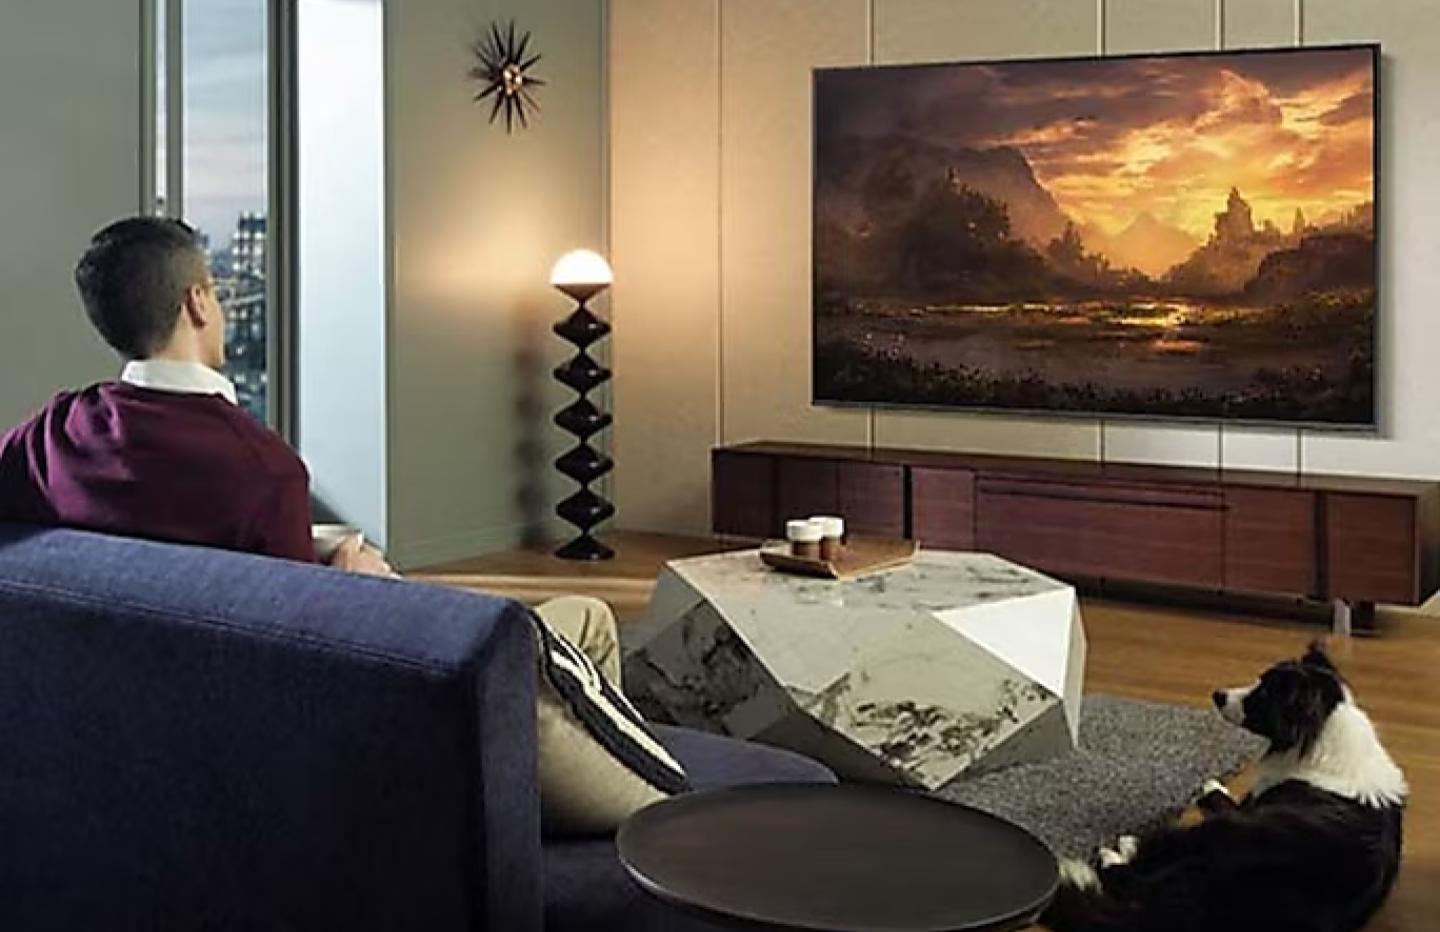 Test : Cette télévision 40 pouces Samsung est aussi fine que performante